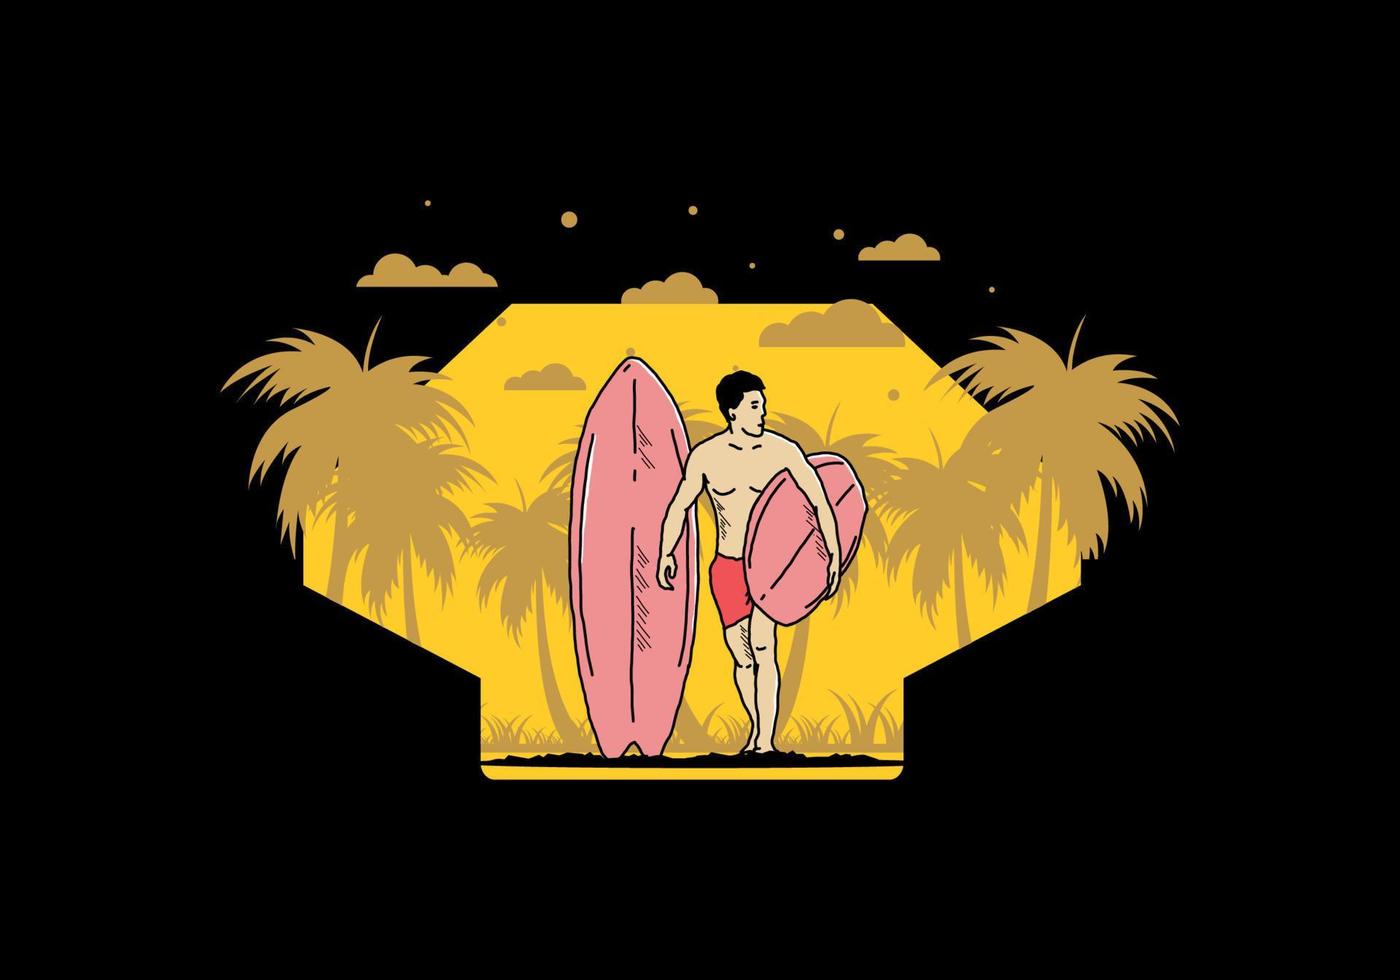 o homem sem camisa segurando a ilustração de prancha de surf vetor